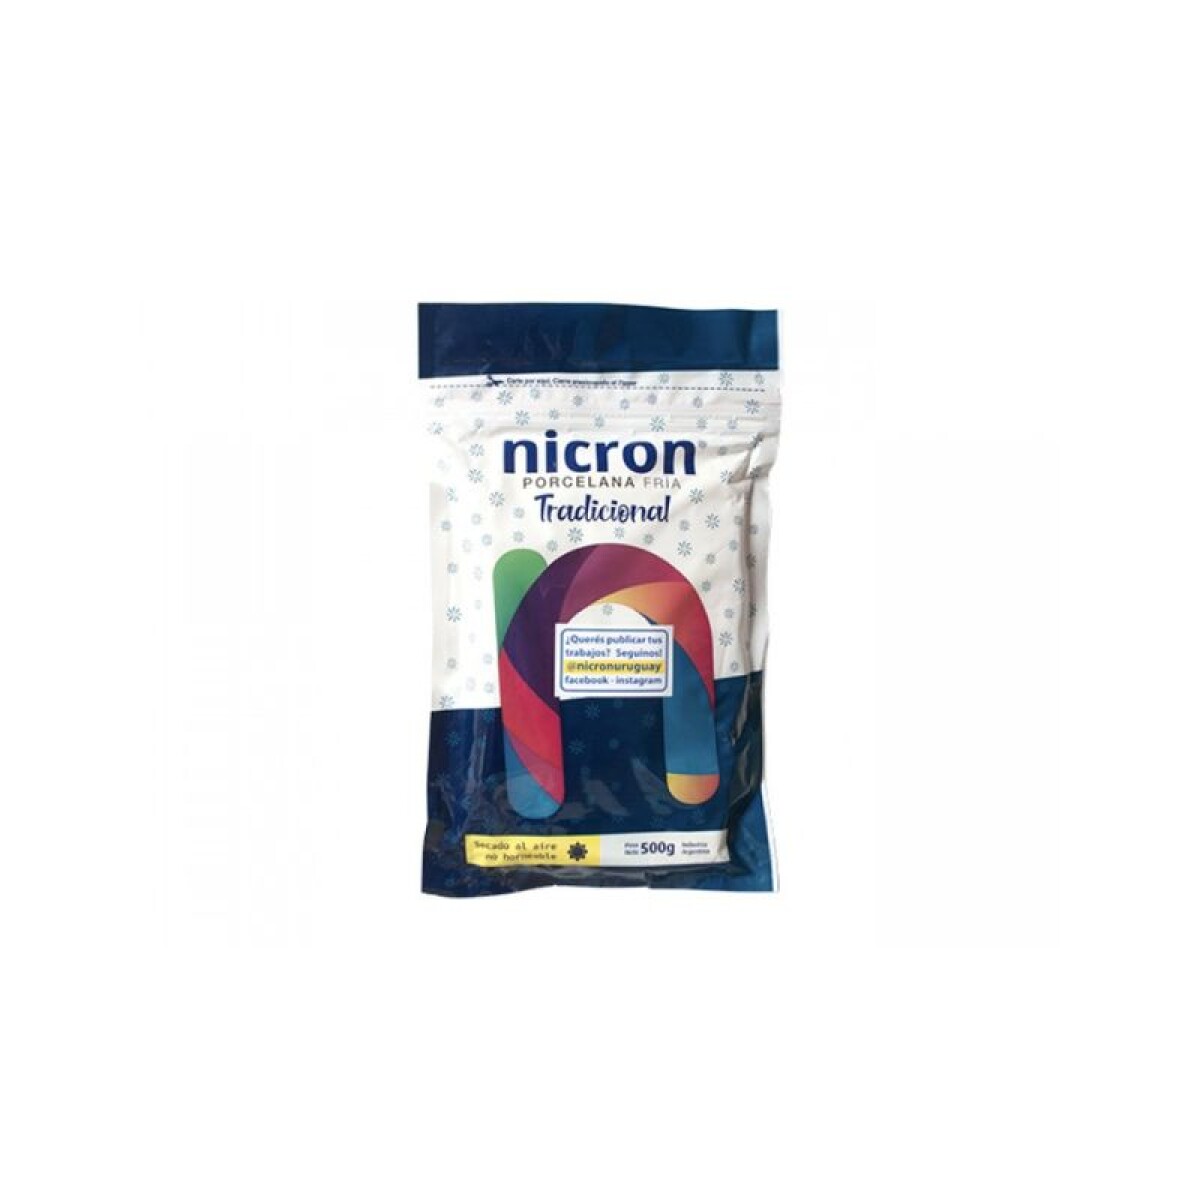 Porcelana fría Nicron - 250 g 